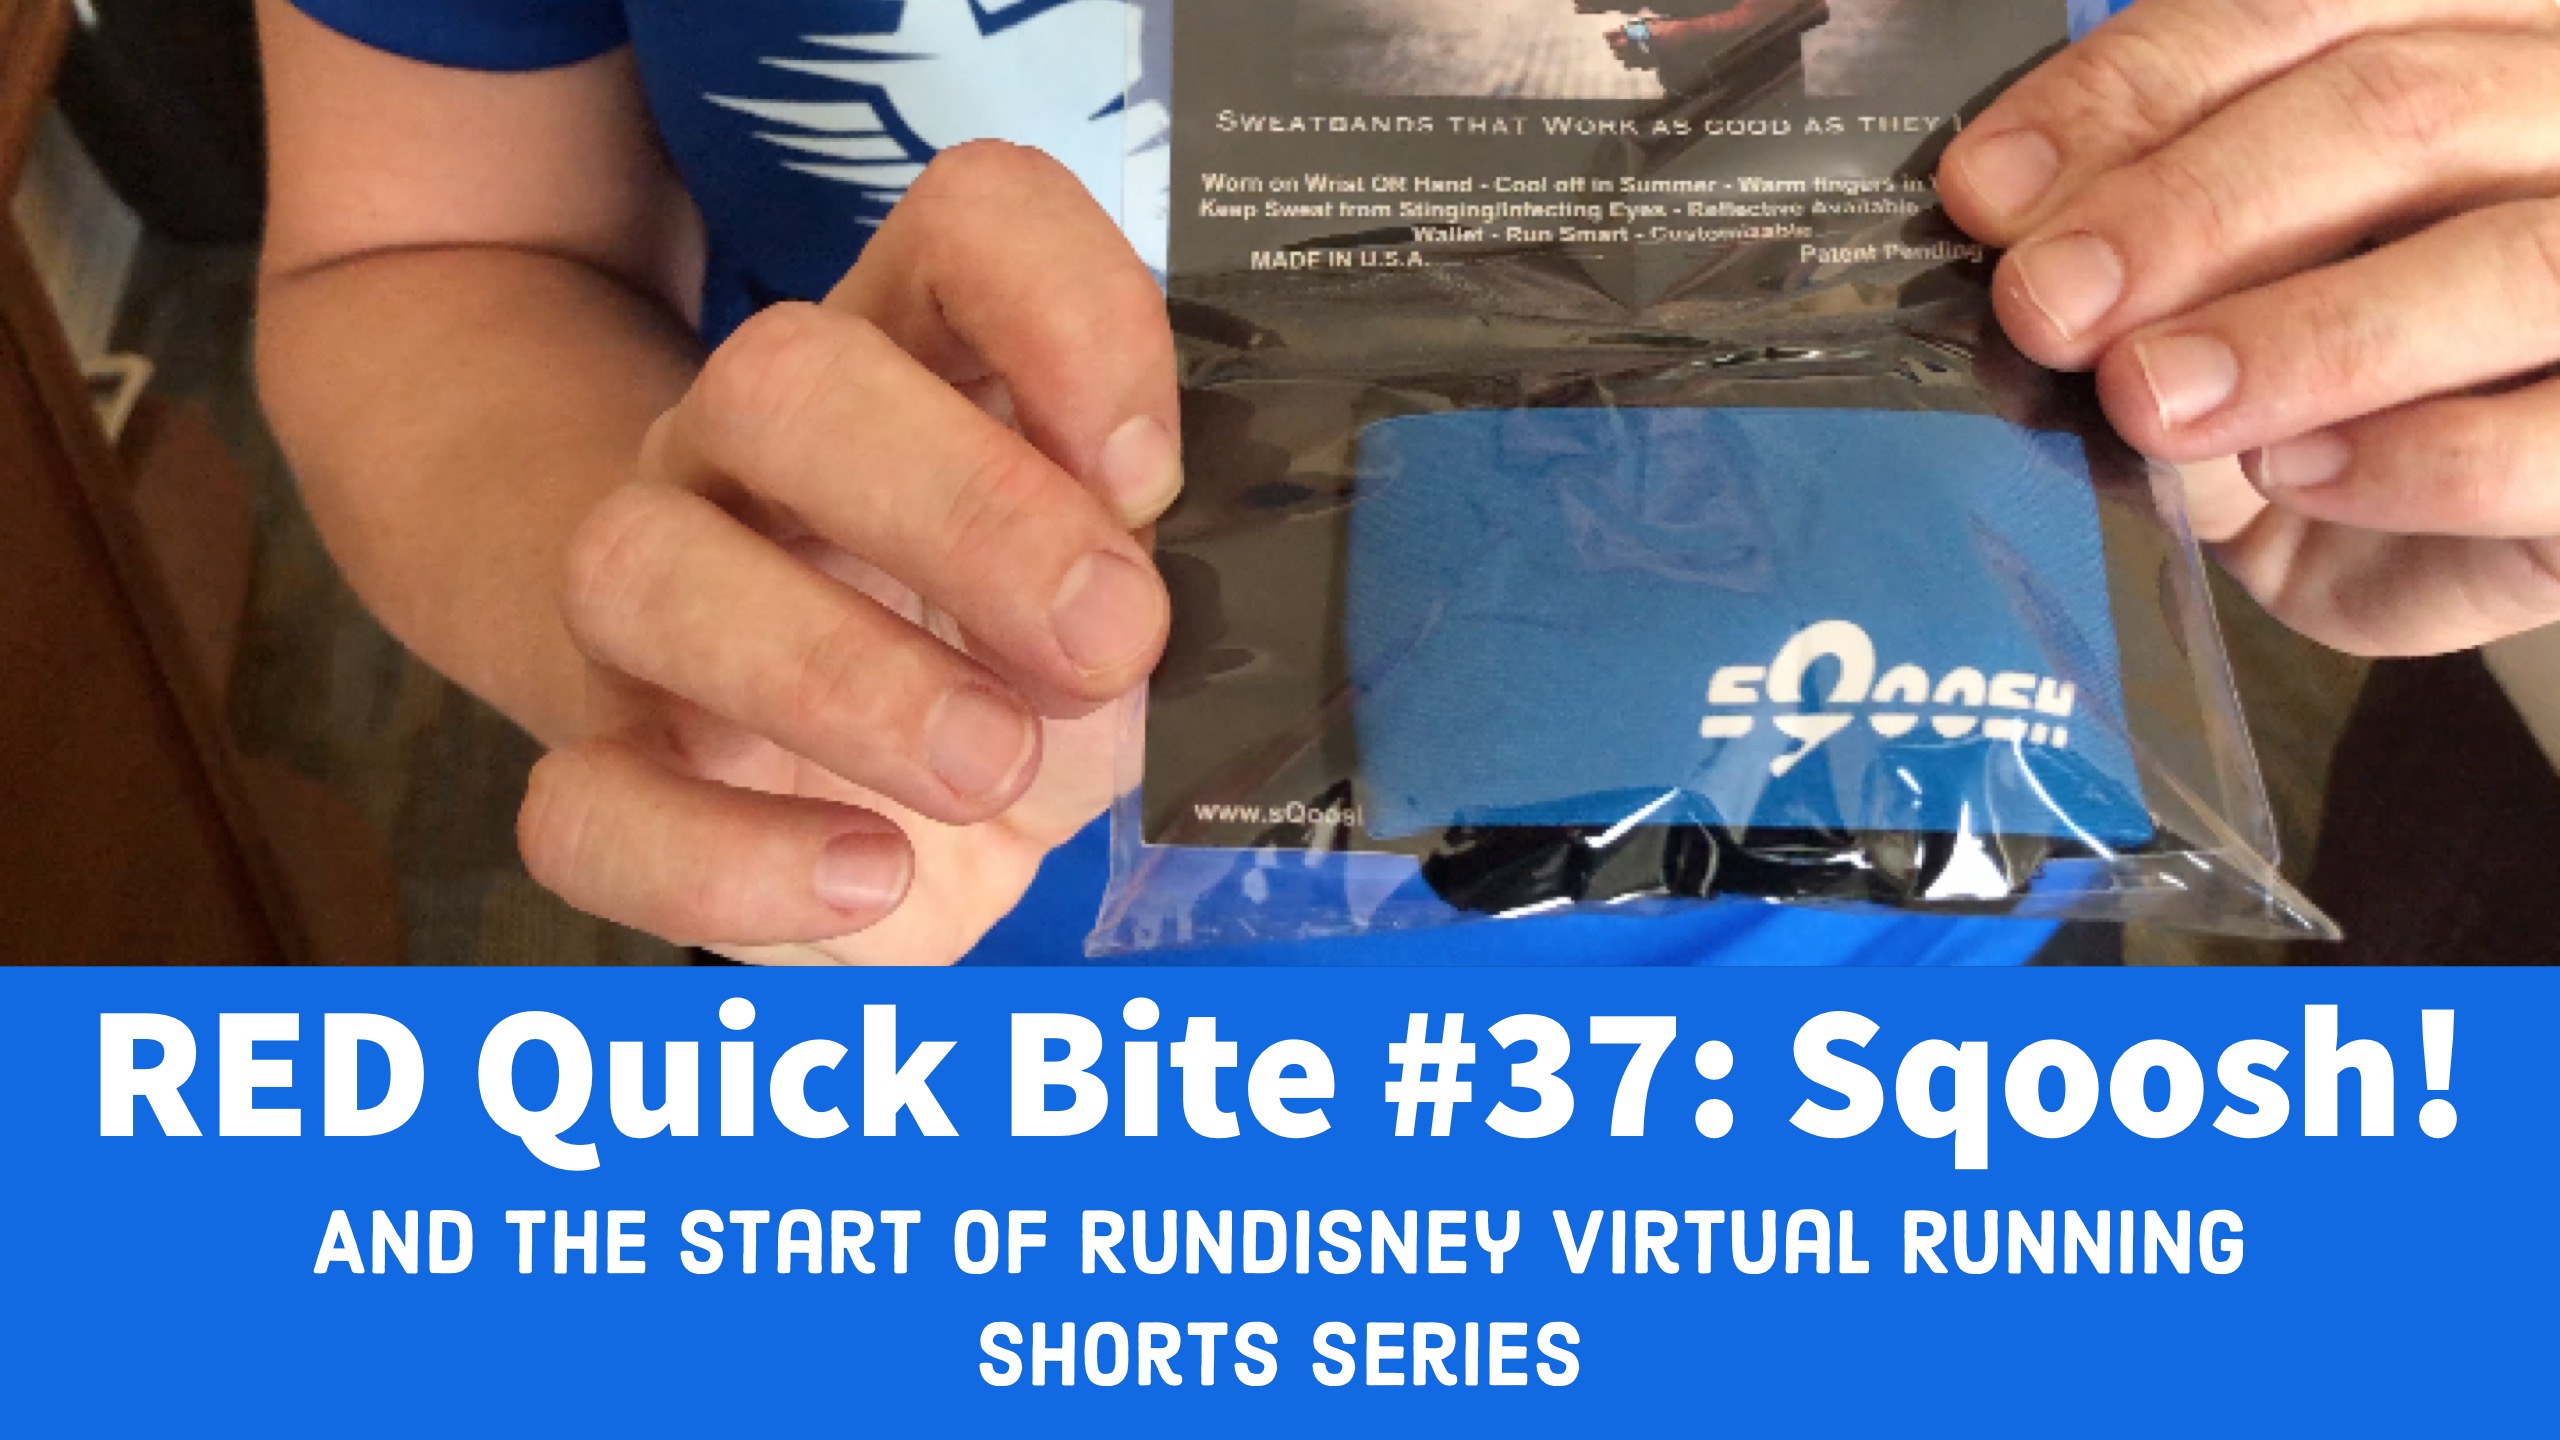 RED Quick Bite #37:  Sqoosh! And RunDisney’s Virtual Running Shorts Series